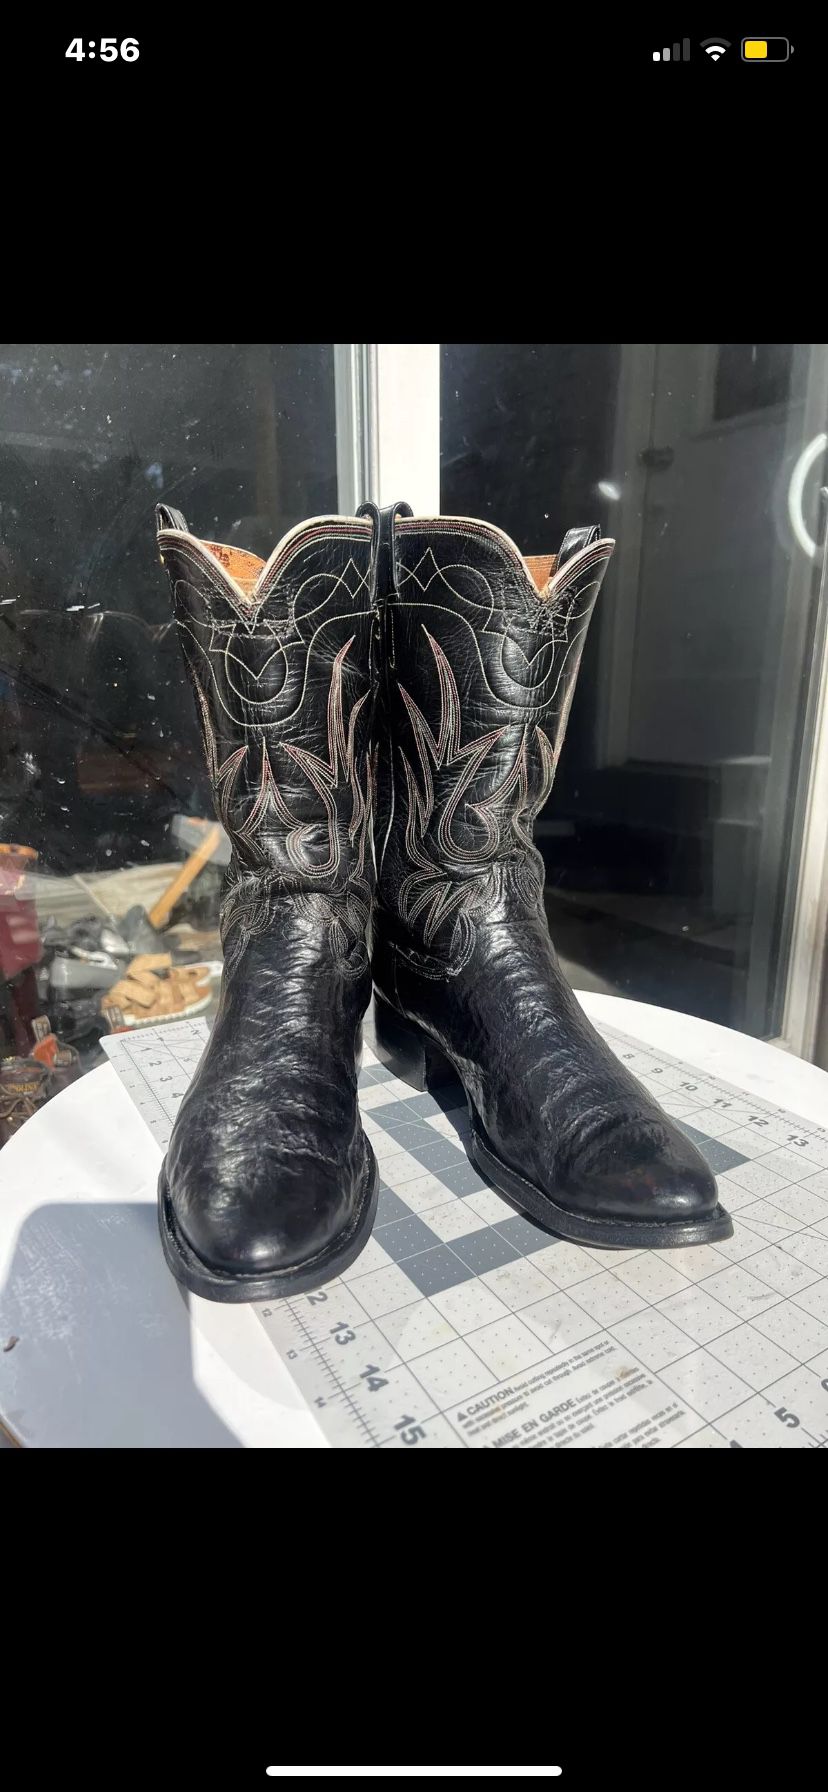 Vintage Shark Skin Cowboy  Boots 